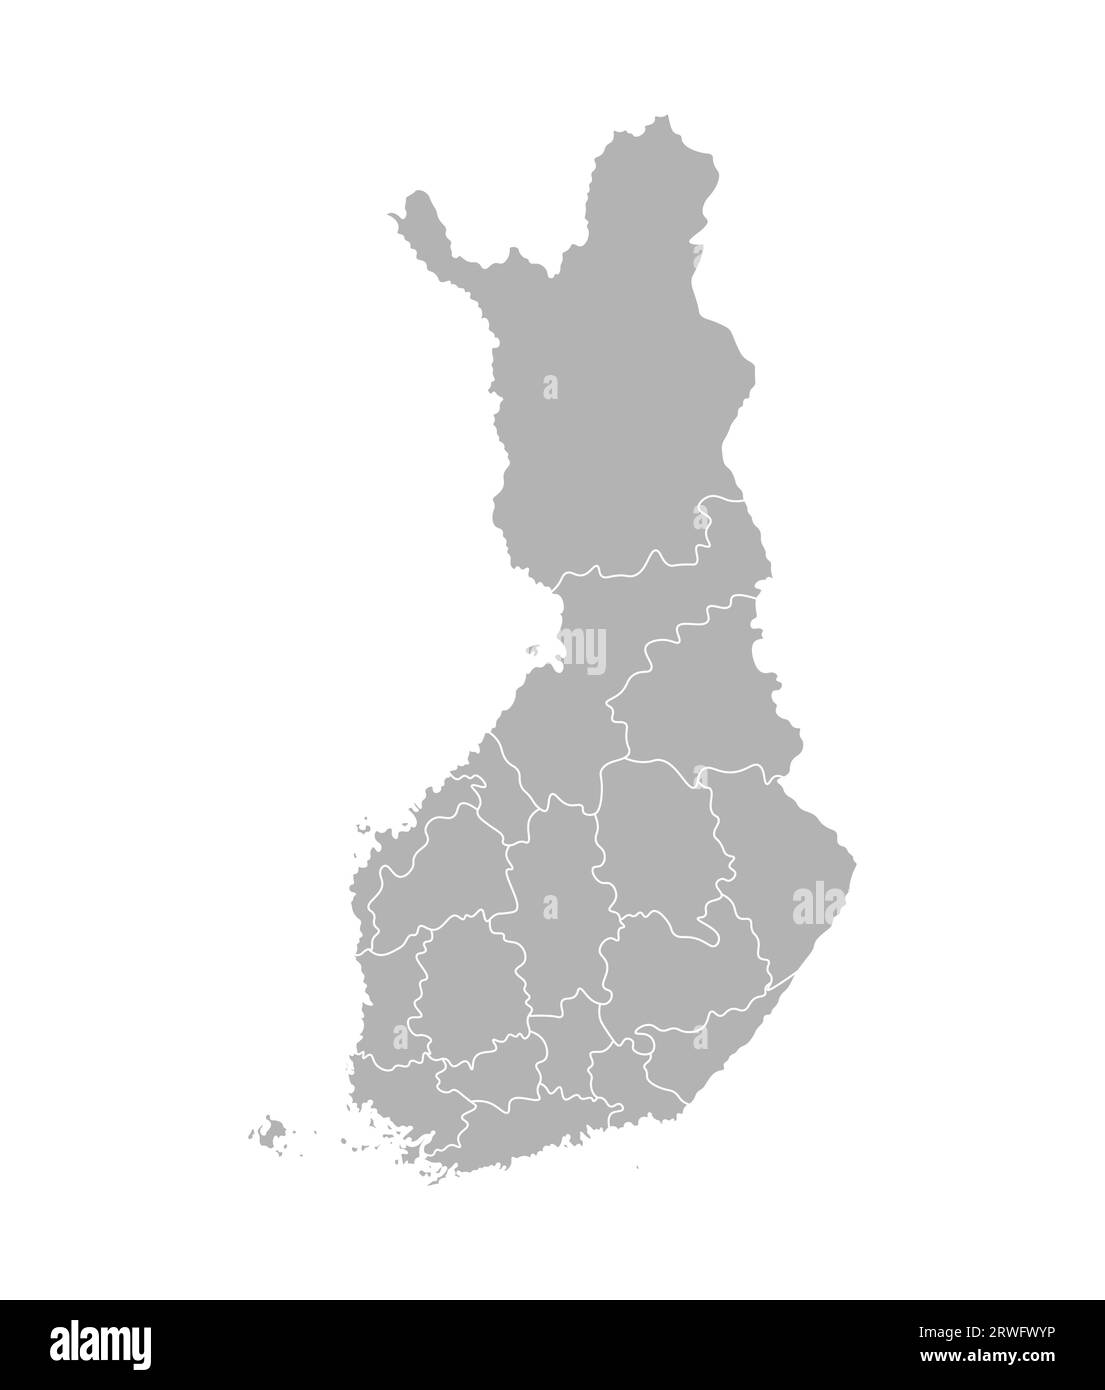 Vektorisolierte vereinfachte Karte der finnischen Regionen. Grenzen der Verwaltungsabteilungen. Graue Silhouette, weißer Umriss und Hintergrund Stock Vektor